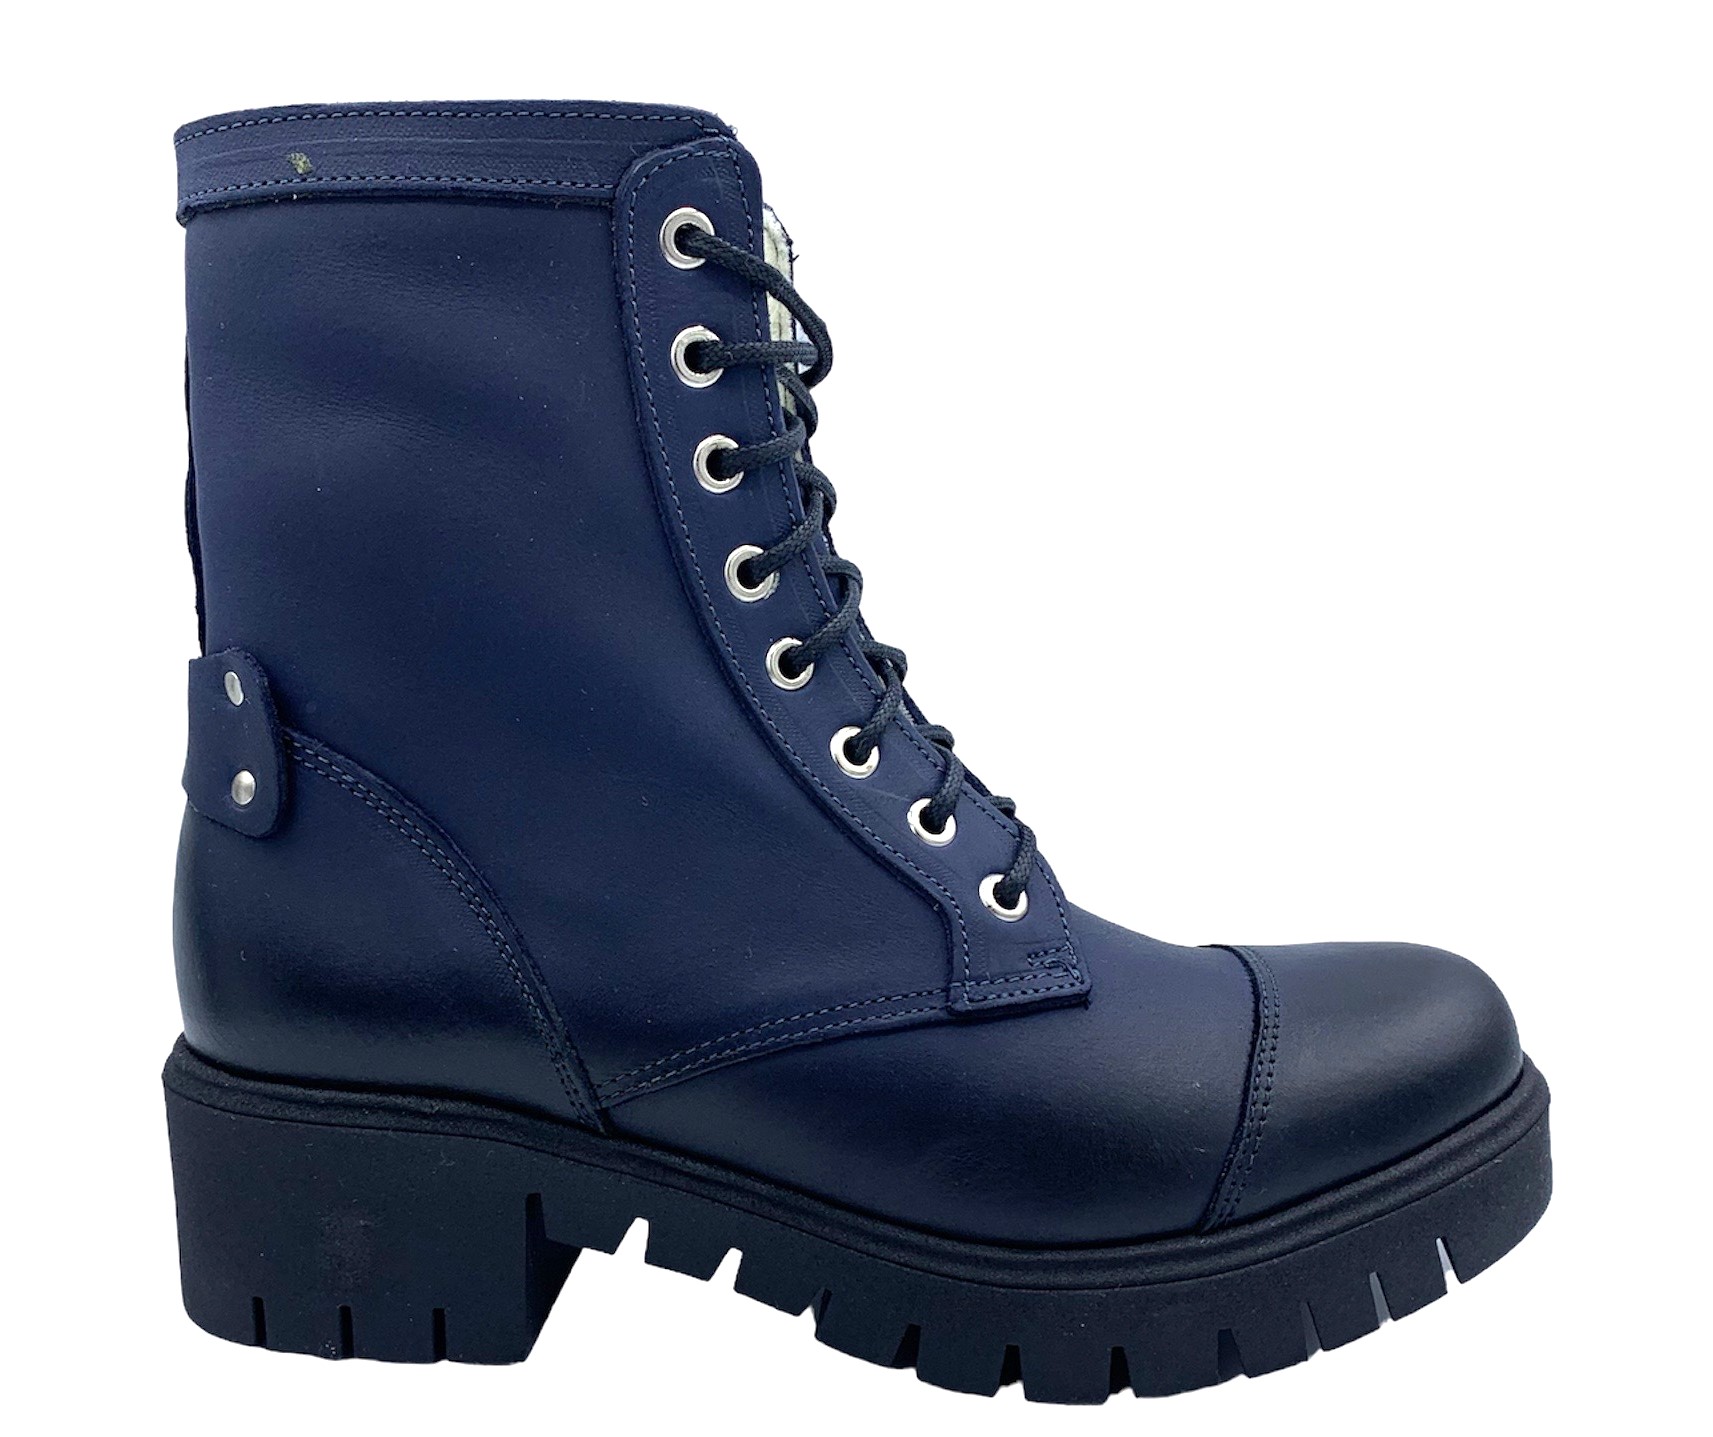 Dámská zimní obuv Hilby 1315 tm. modrá Velikost: 39 (EU)